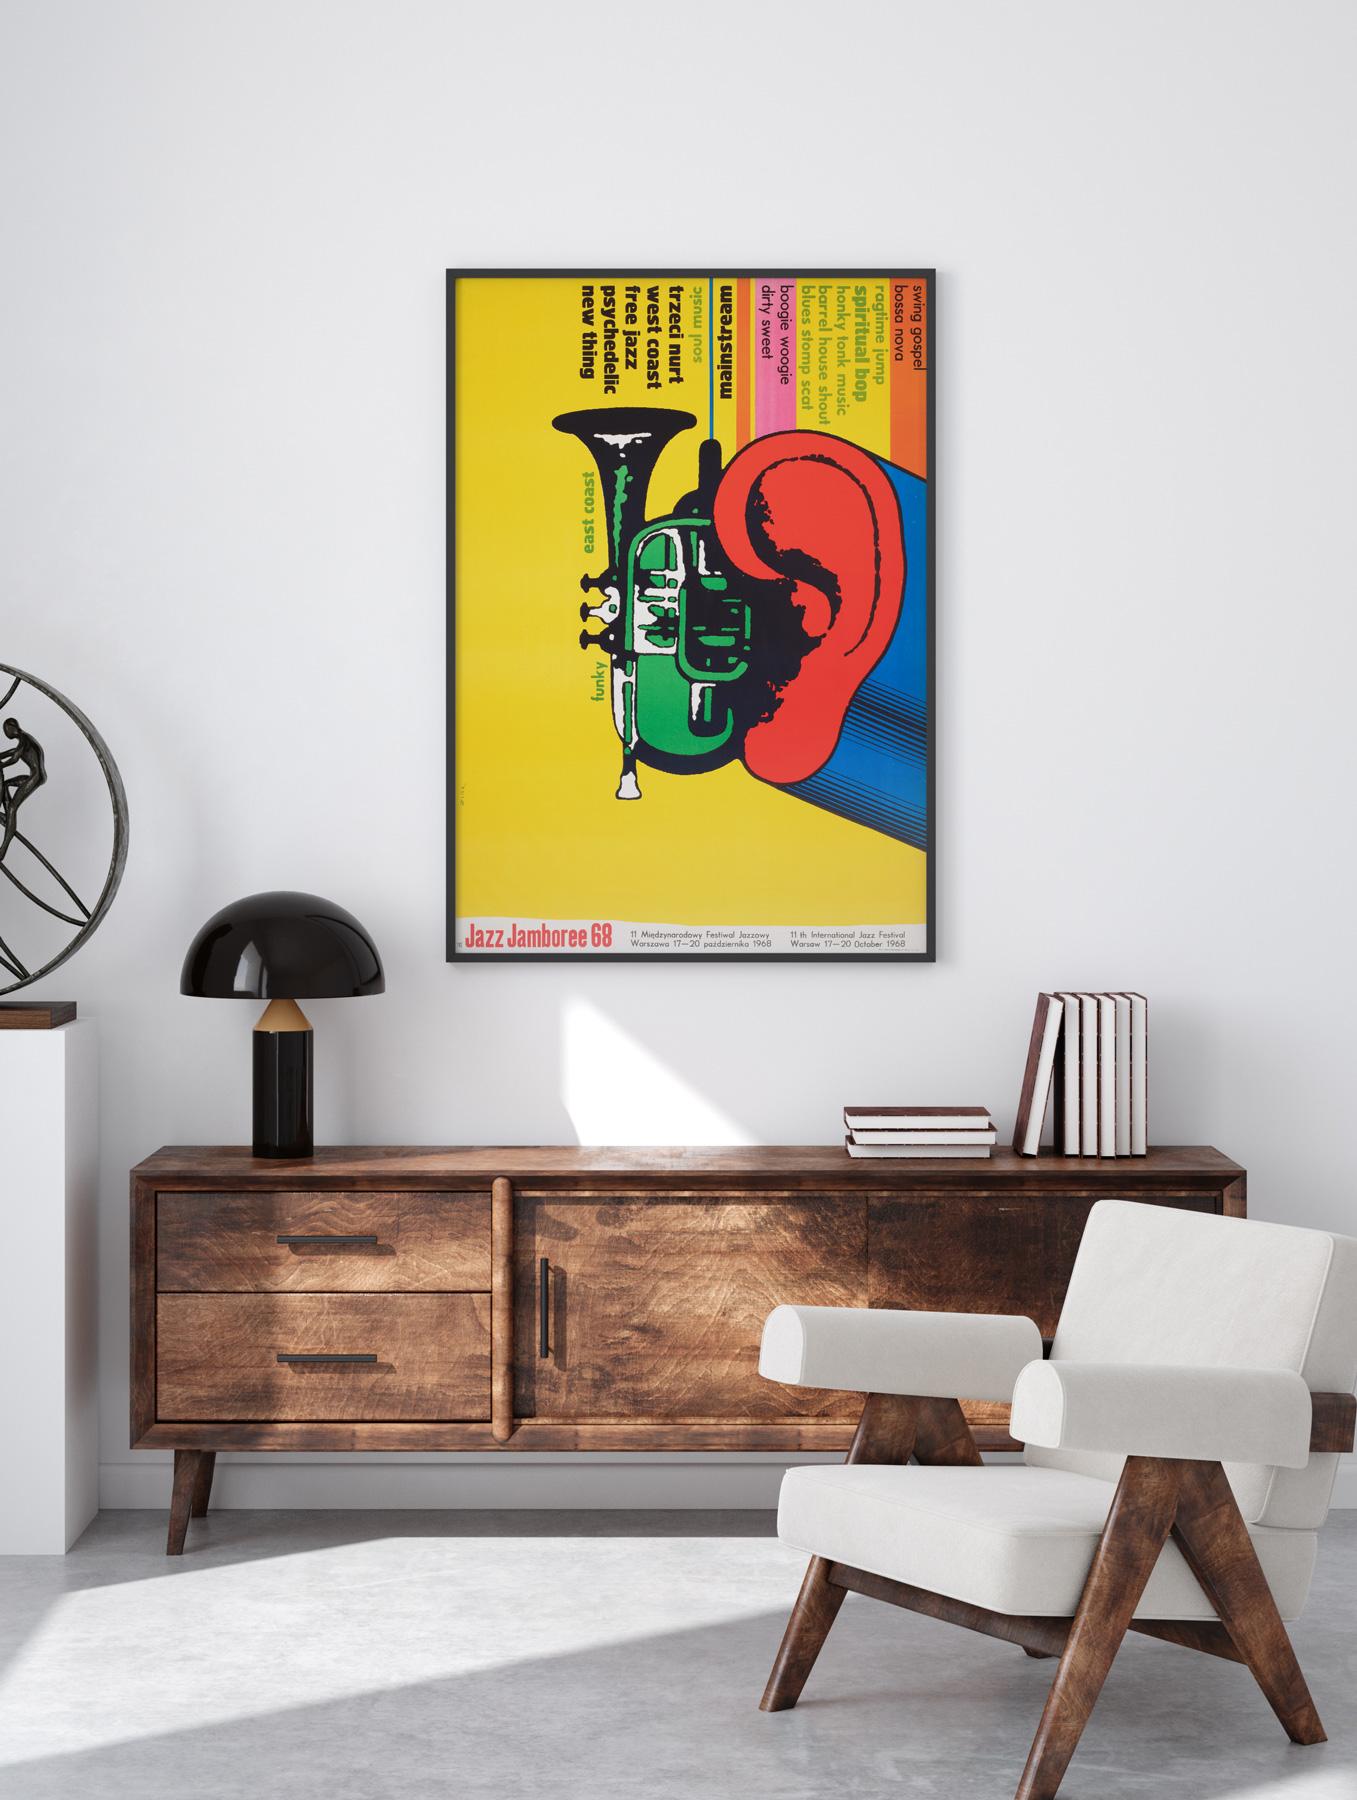 Wir lieben das Design von Bronislaw Zelek, das auf dieser Original-Erstauflage von 1968 zu sehen ist  Polnisches Jazz-Jamboree. Schönes kühnes Design. Musikfestival-Poster mit hohem Sammlerwert.

Das Ende des Zweiten Weltkriegs markiert den Beginn